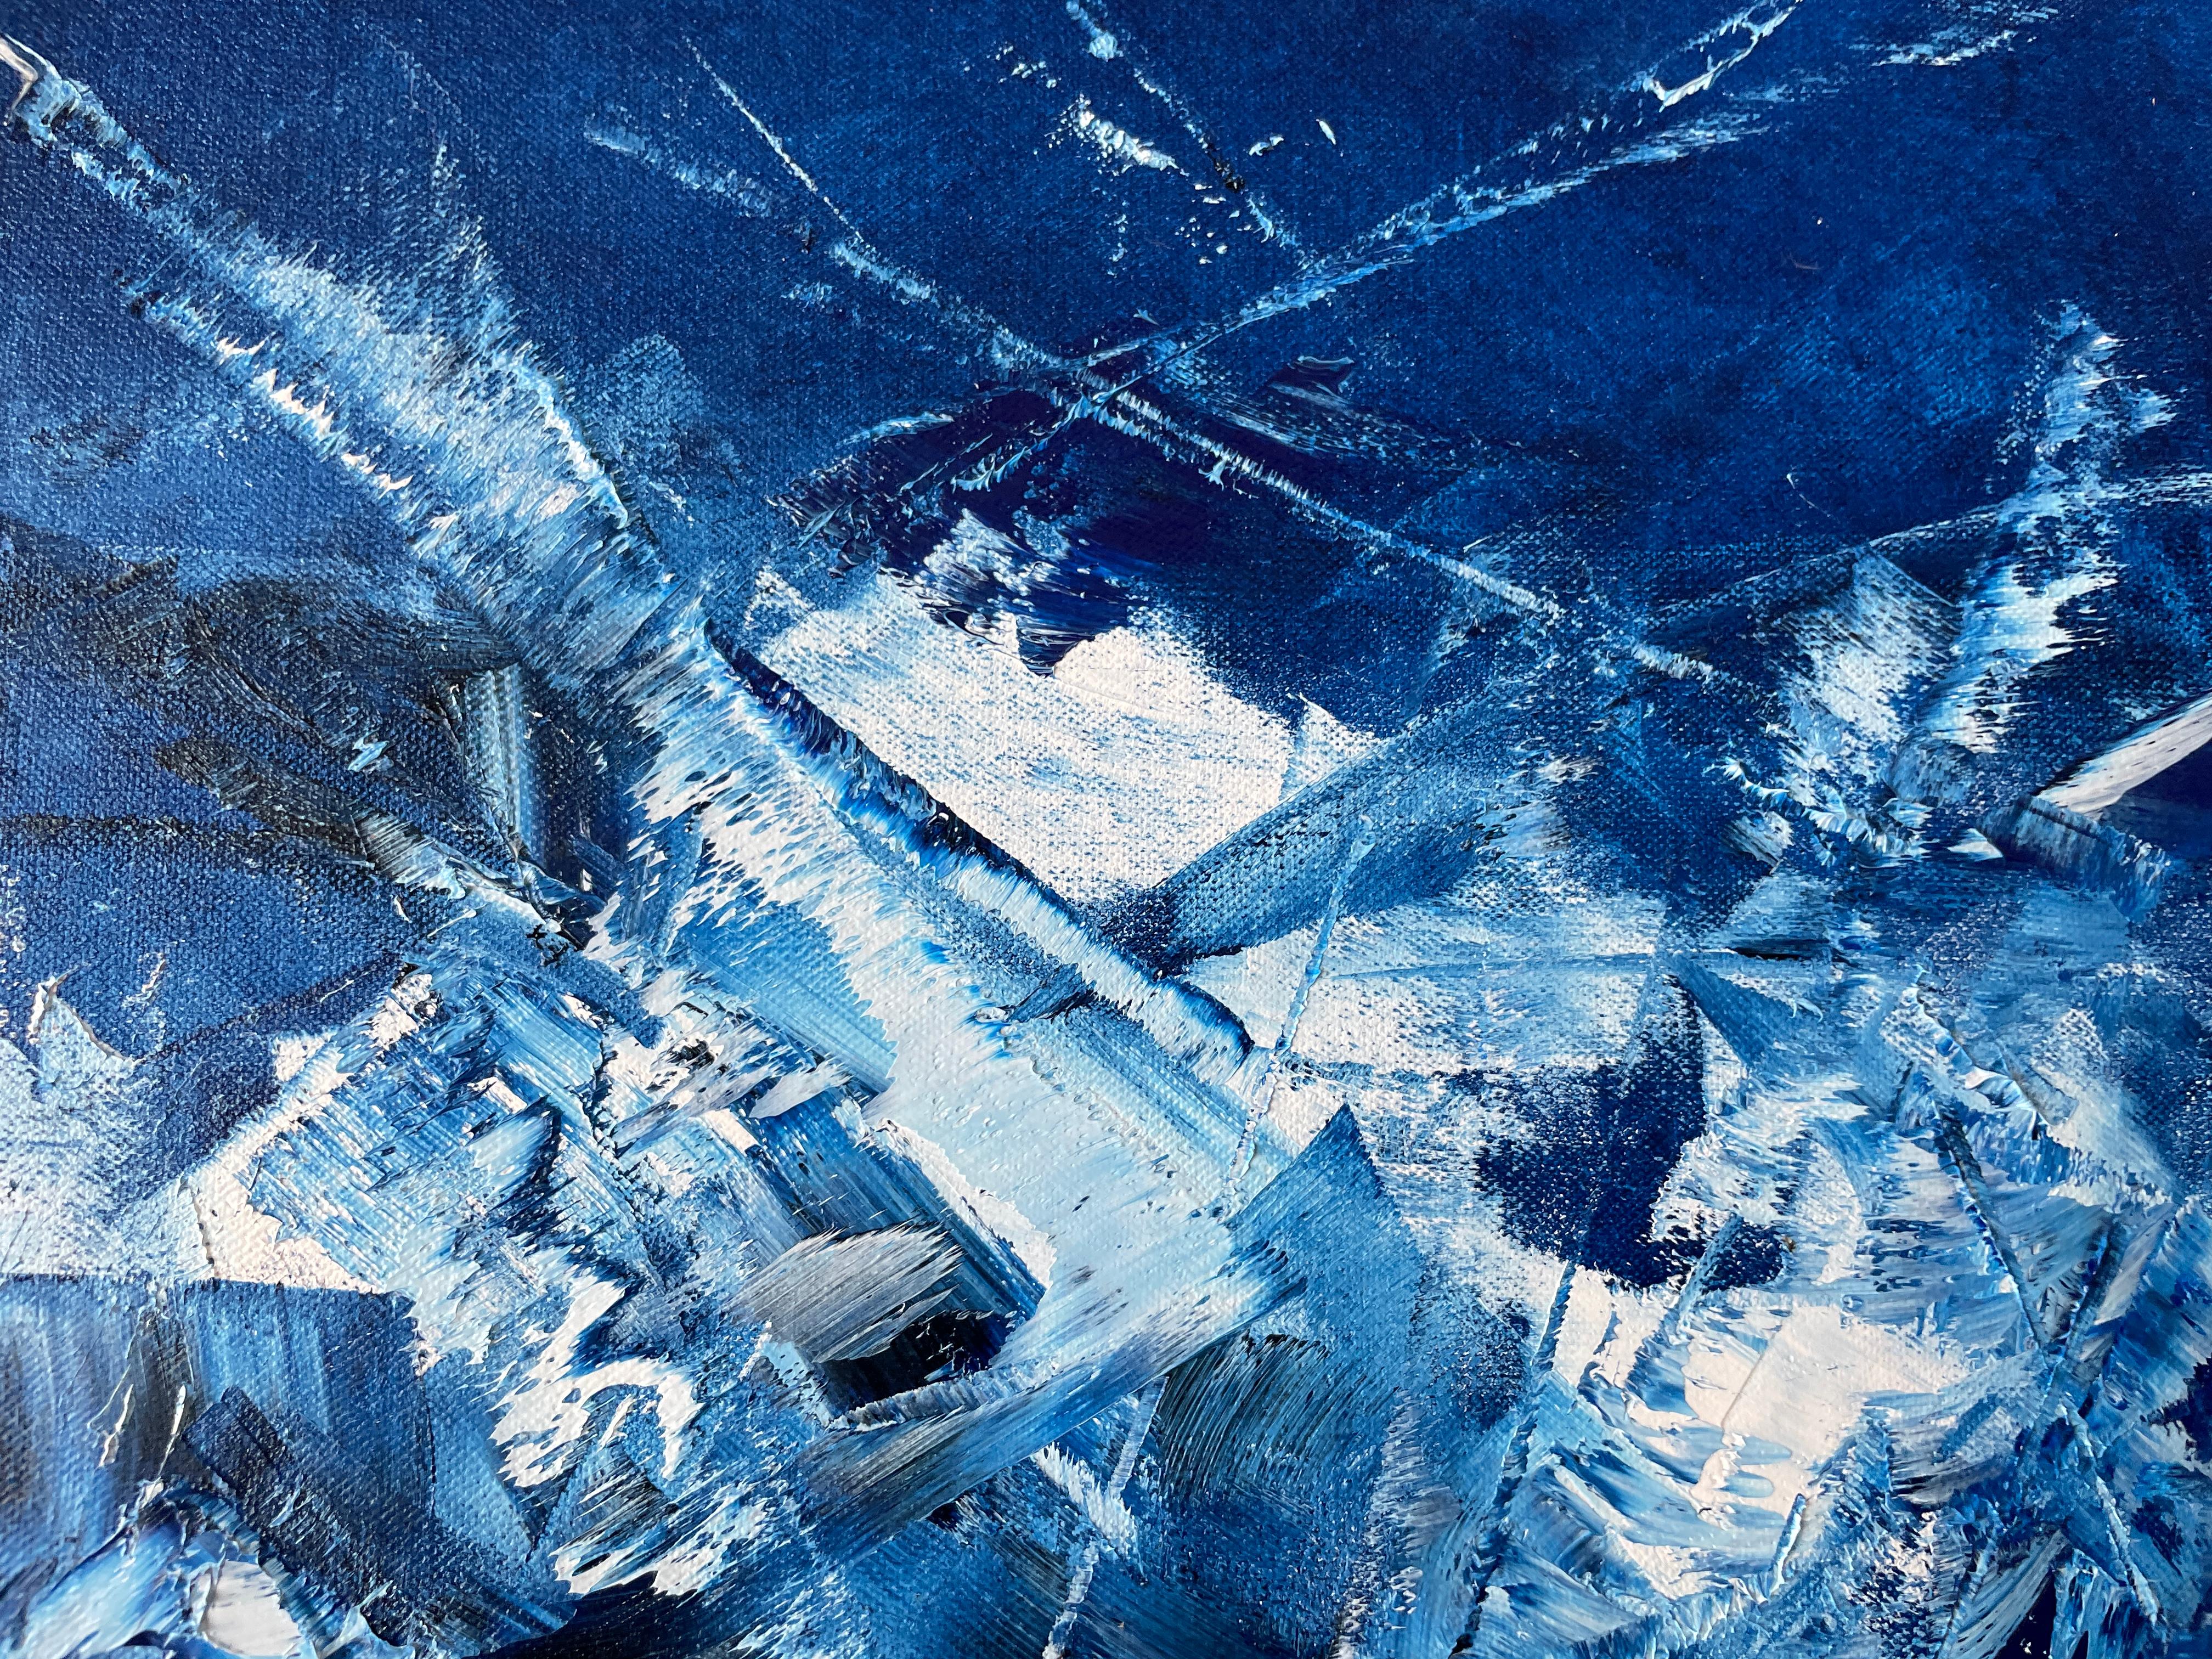 Blau kosmisch 03 (Grau), Abstract Painting, von Juan Jose Garay